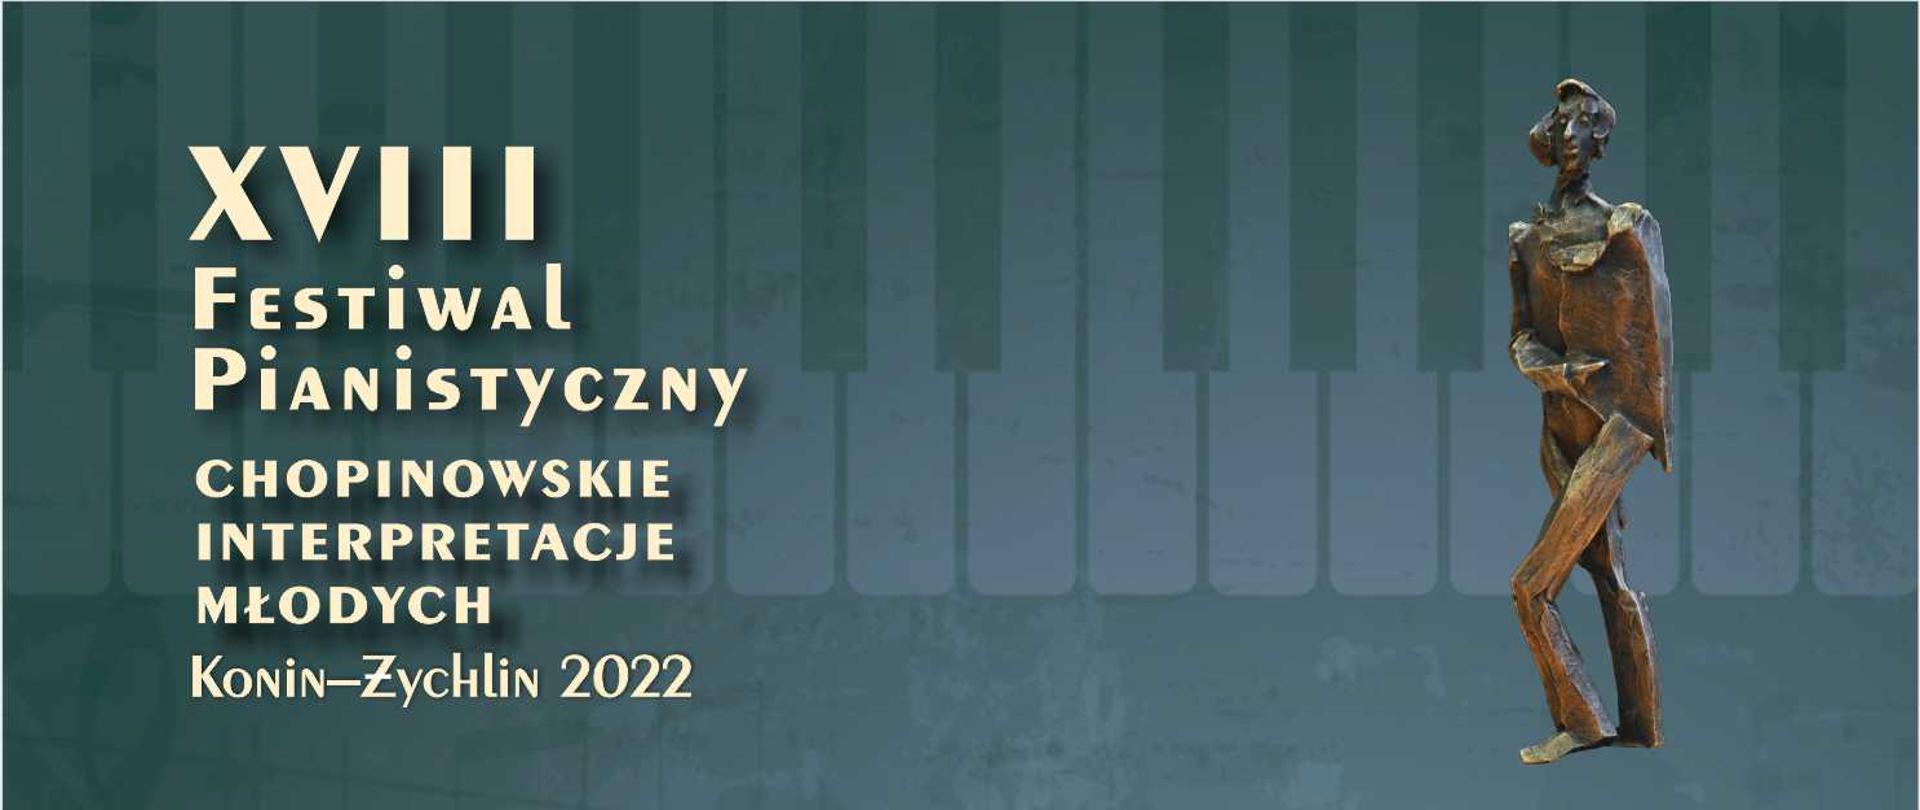 Plakat grafika XVIII Festiwal Pianistyczny Chopinowskie Interpretacje Młodych, Konin-Zychlin 2022, w tle klawiatura fortepianu, kolor ciemnozielony, po prawej stronie figurka Chopina.